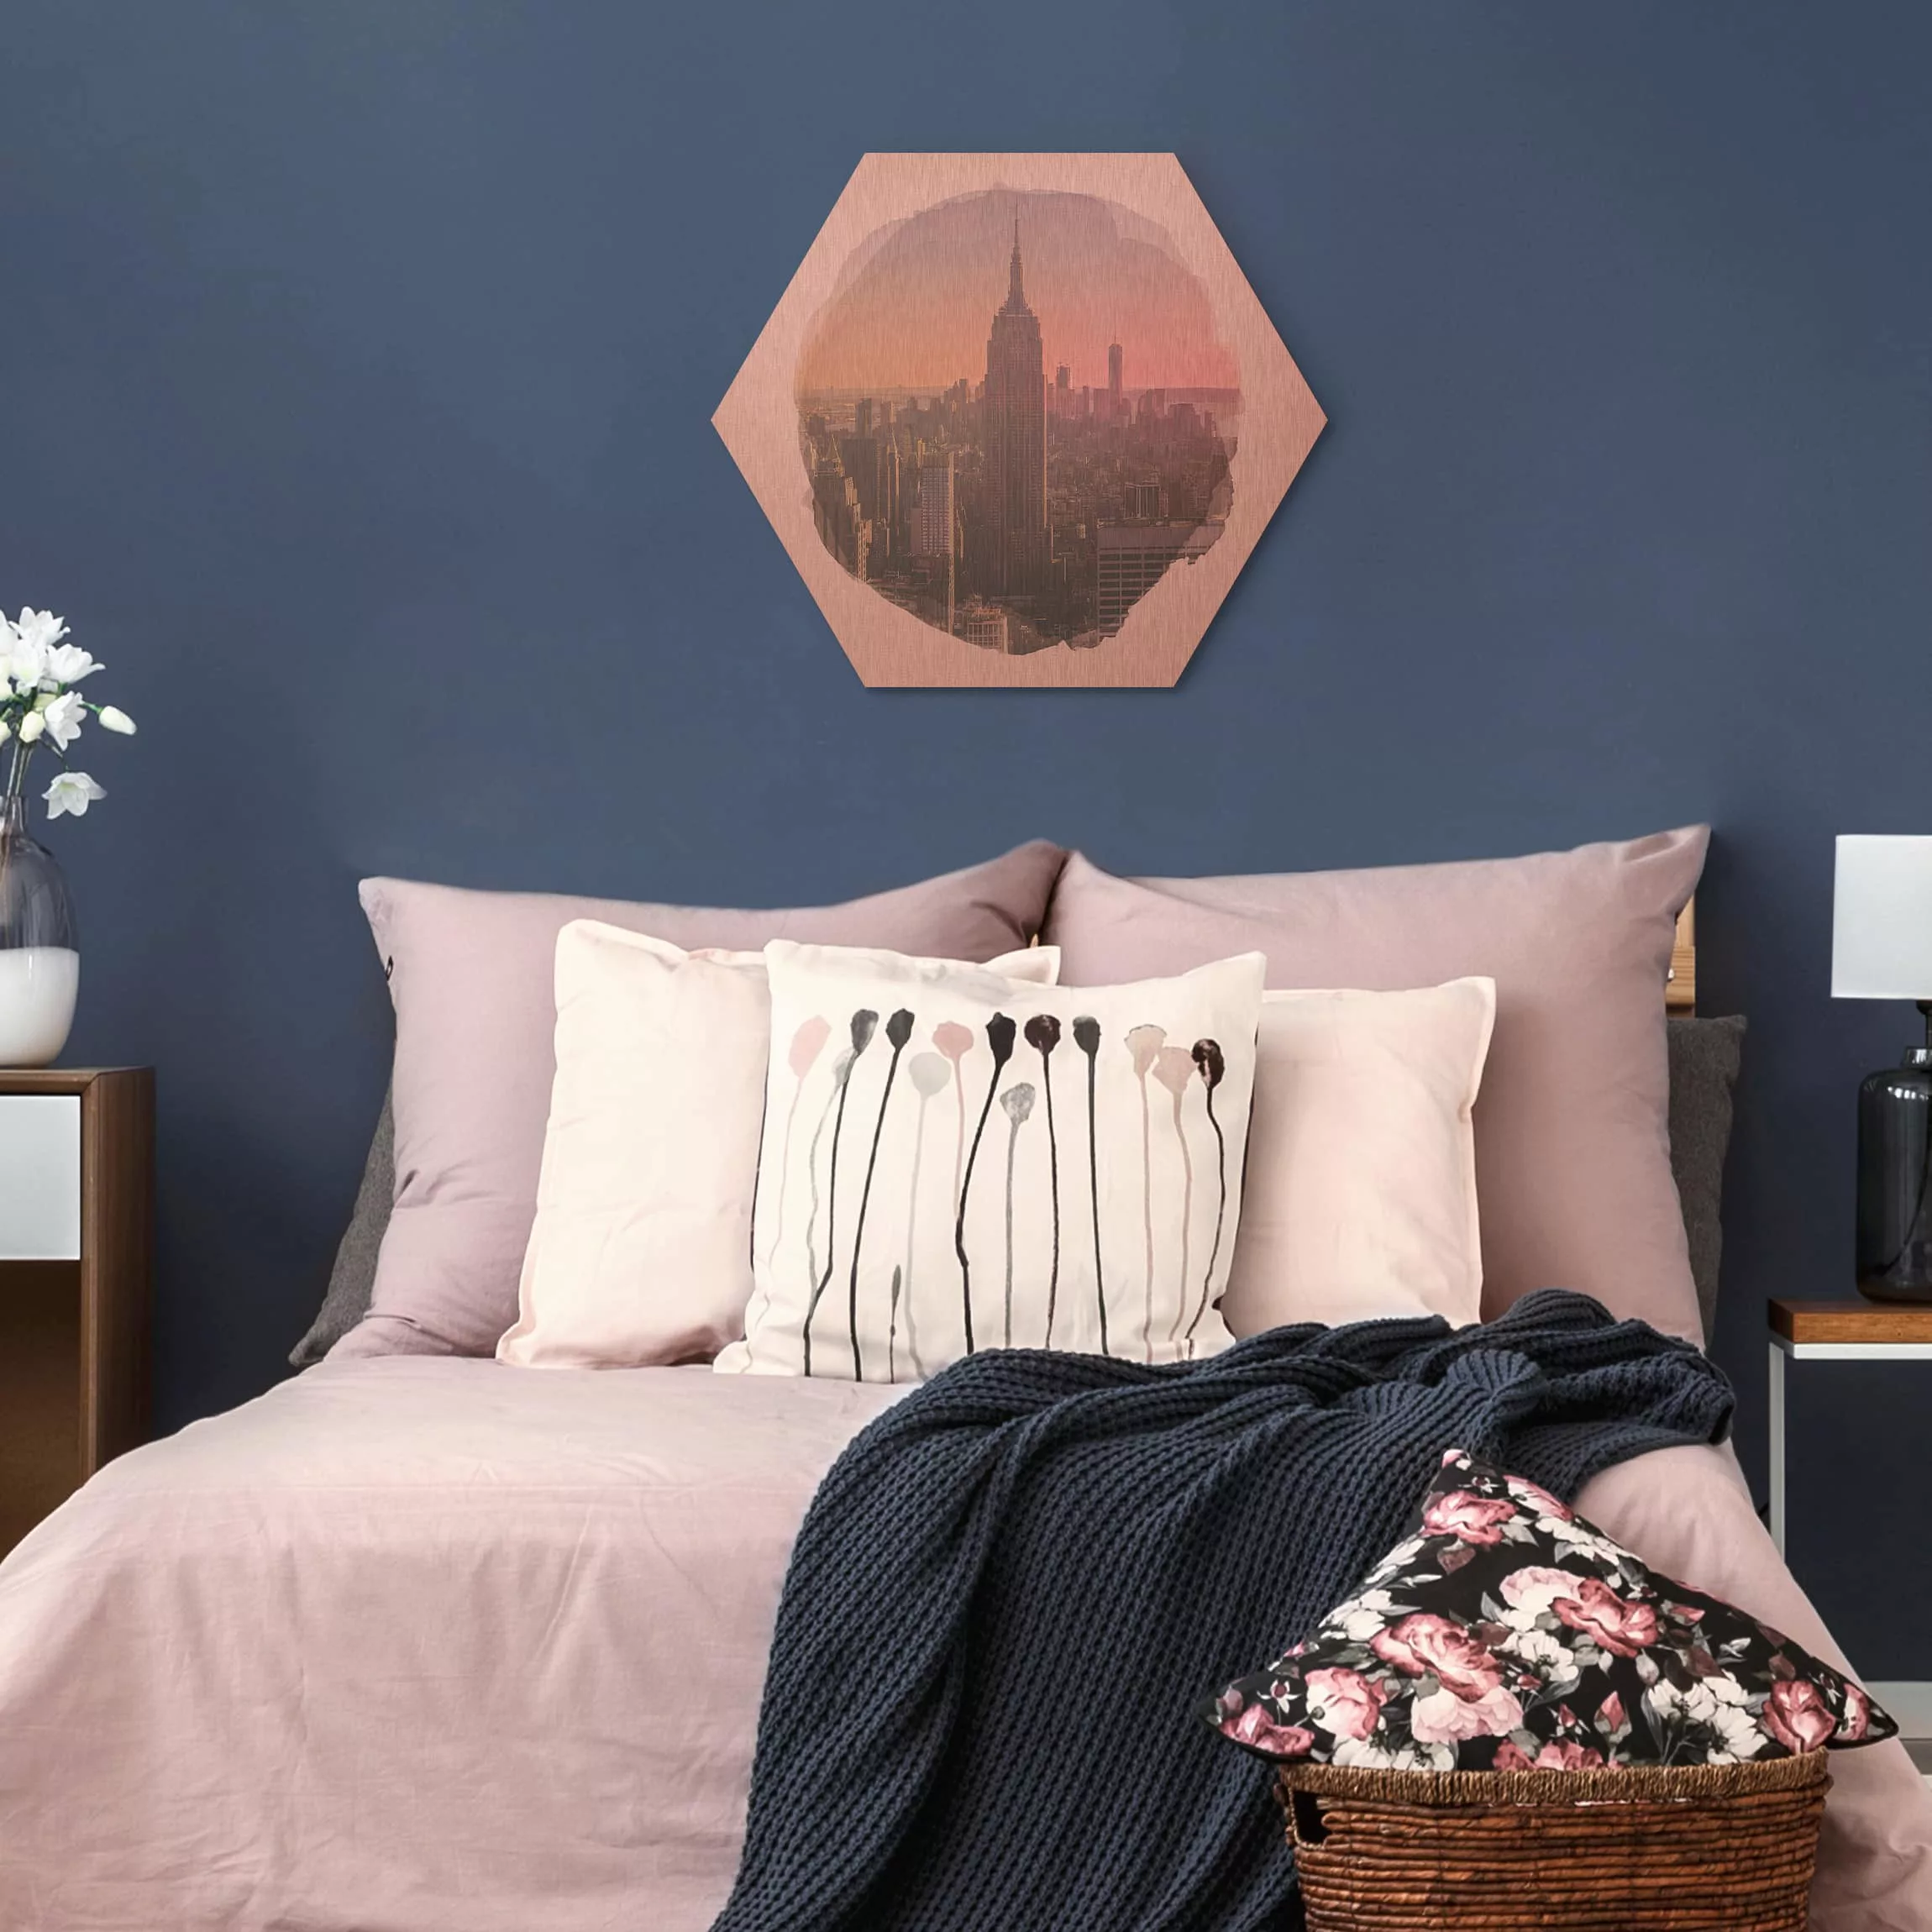 Hexagon-Alu-Dibond Bild Architektur & Skyline Wasserfarben - Blick vom Top günstig online kaufen